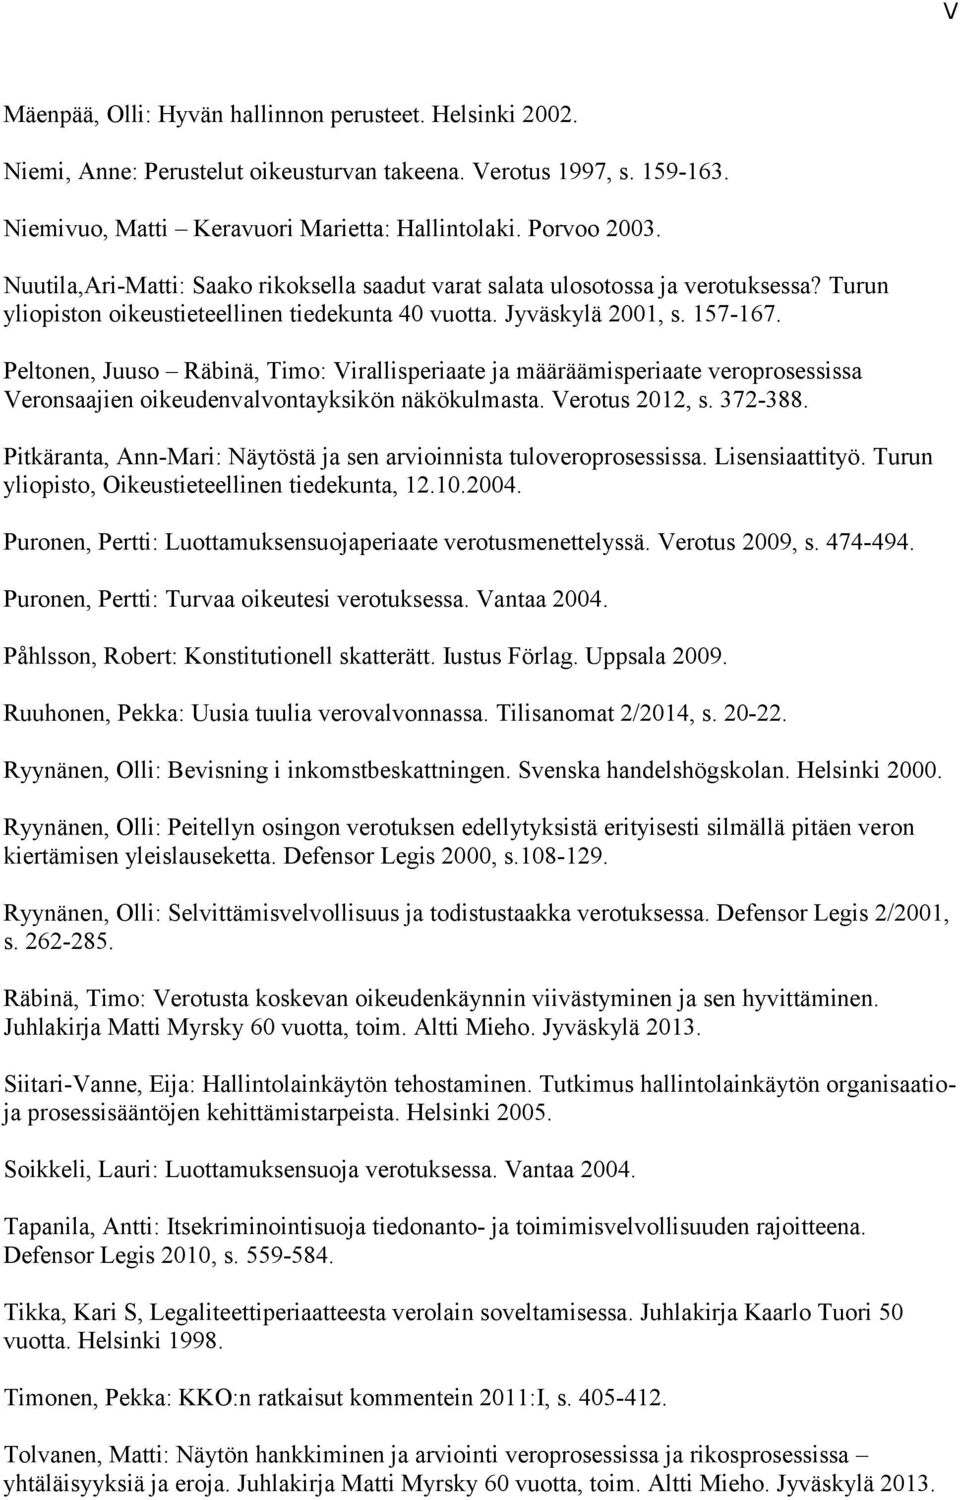 Peltonen, Juuso Räbinä, Timo: Virallisperiaate ja määräämisperiaate veroprosessissa Veronsaajien oikeudenvalvontayksikön näkökulmasta. Verotus 2012, s. 372-388.